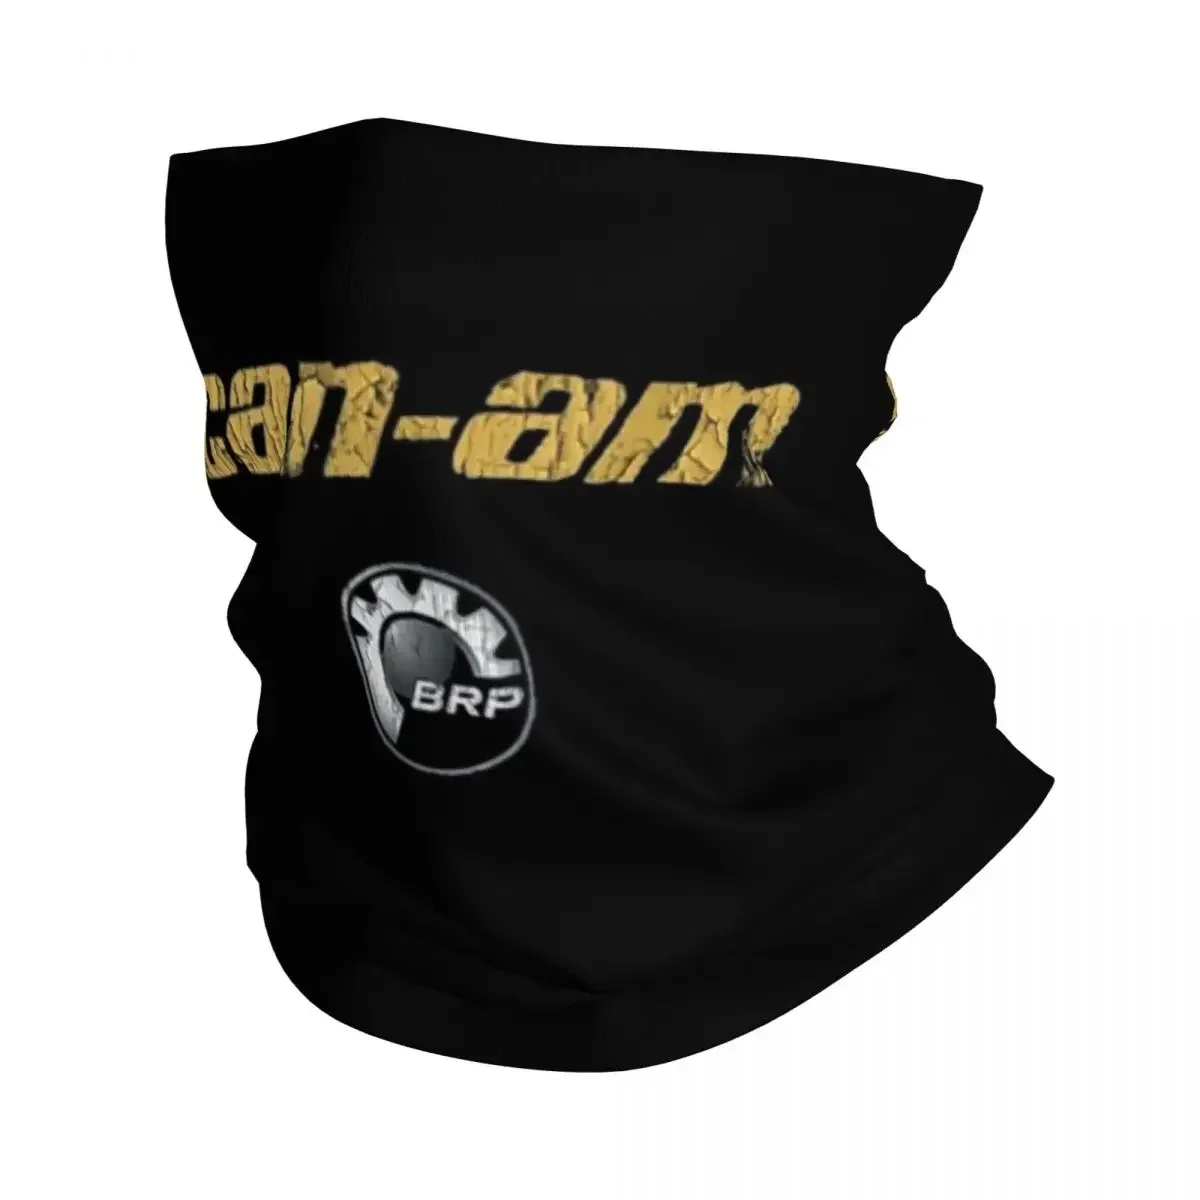 

Мотоциклетная бандана Can-Am BRP, шарф с принтом, многофункциональный дышащий головной убор для верховой езды для мужчин и женщин, для взрослых